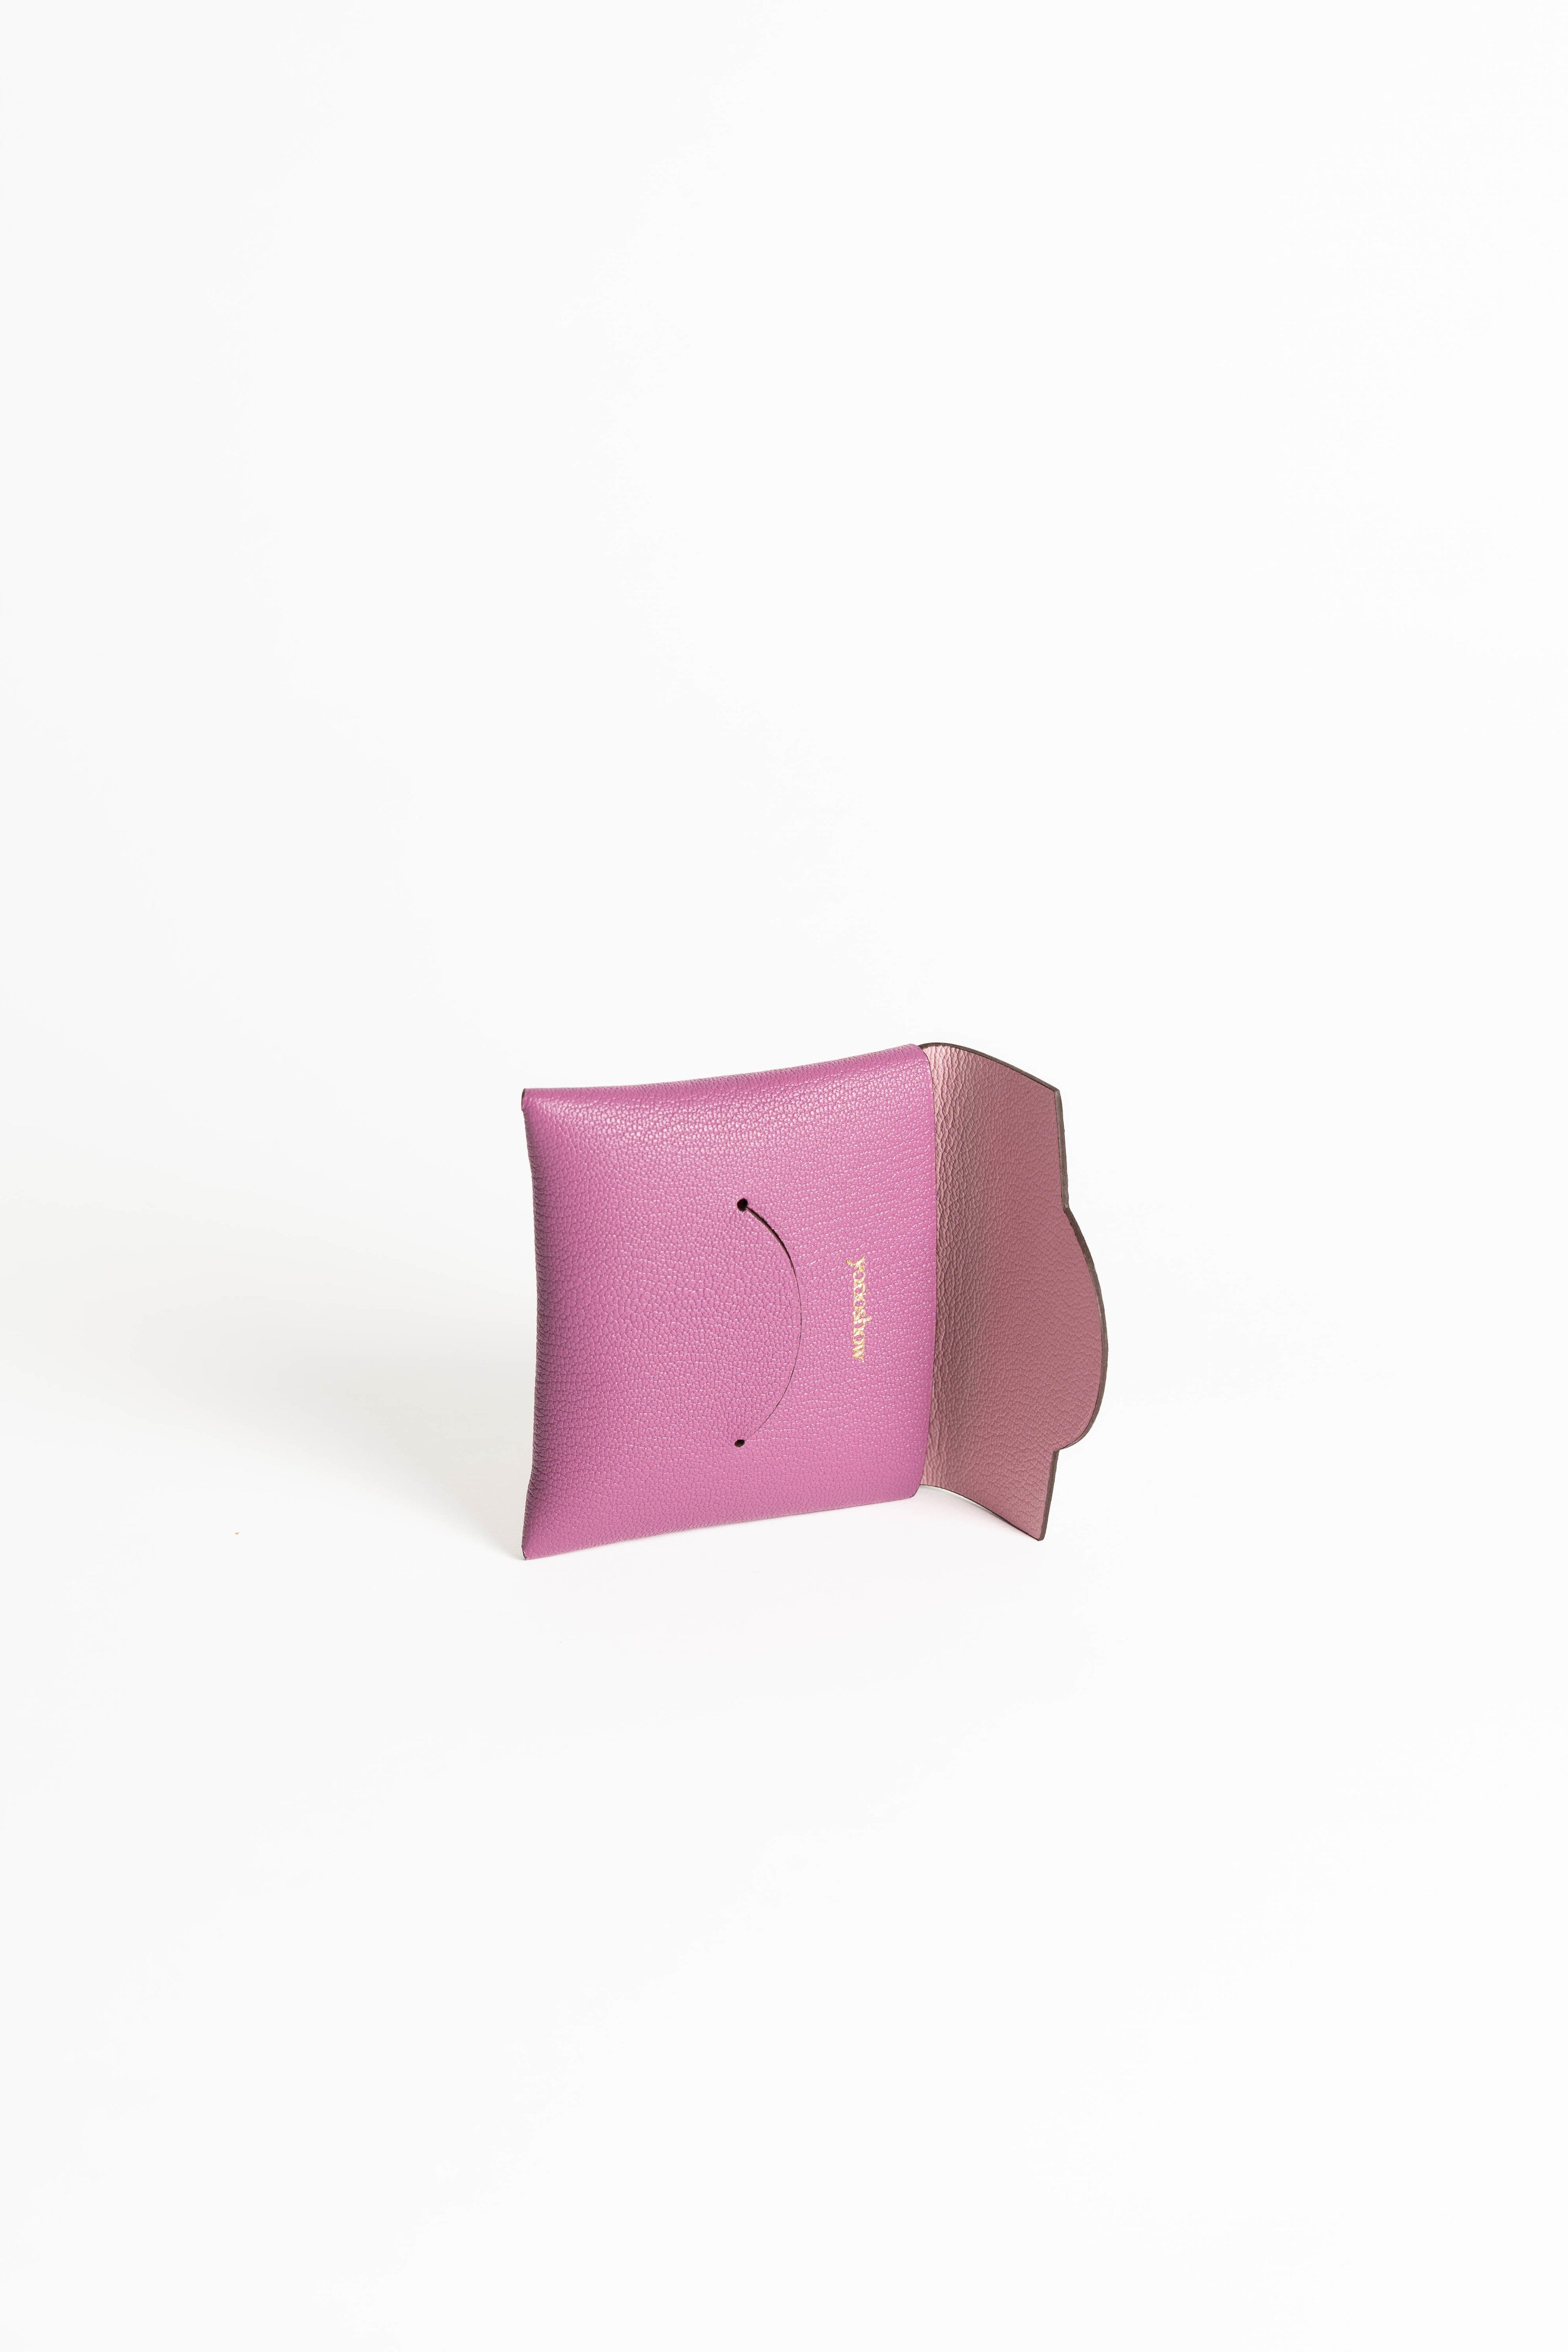 コインケース　オシャレ　ミニマム　ピンク　ロゼ　coin case pink rose pink minimal designer 